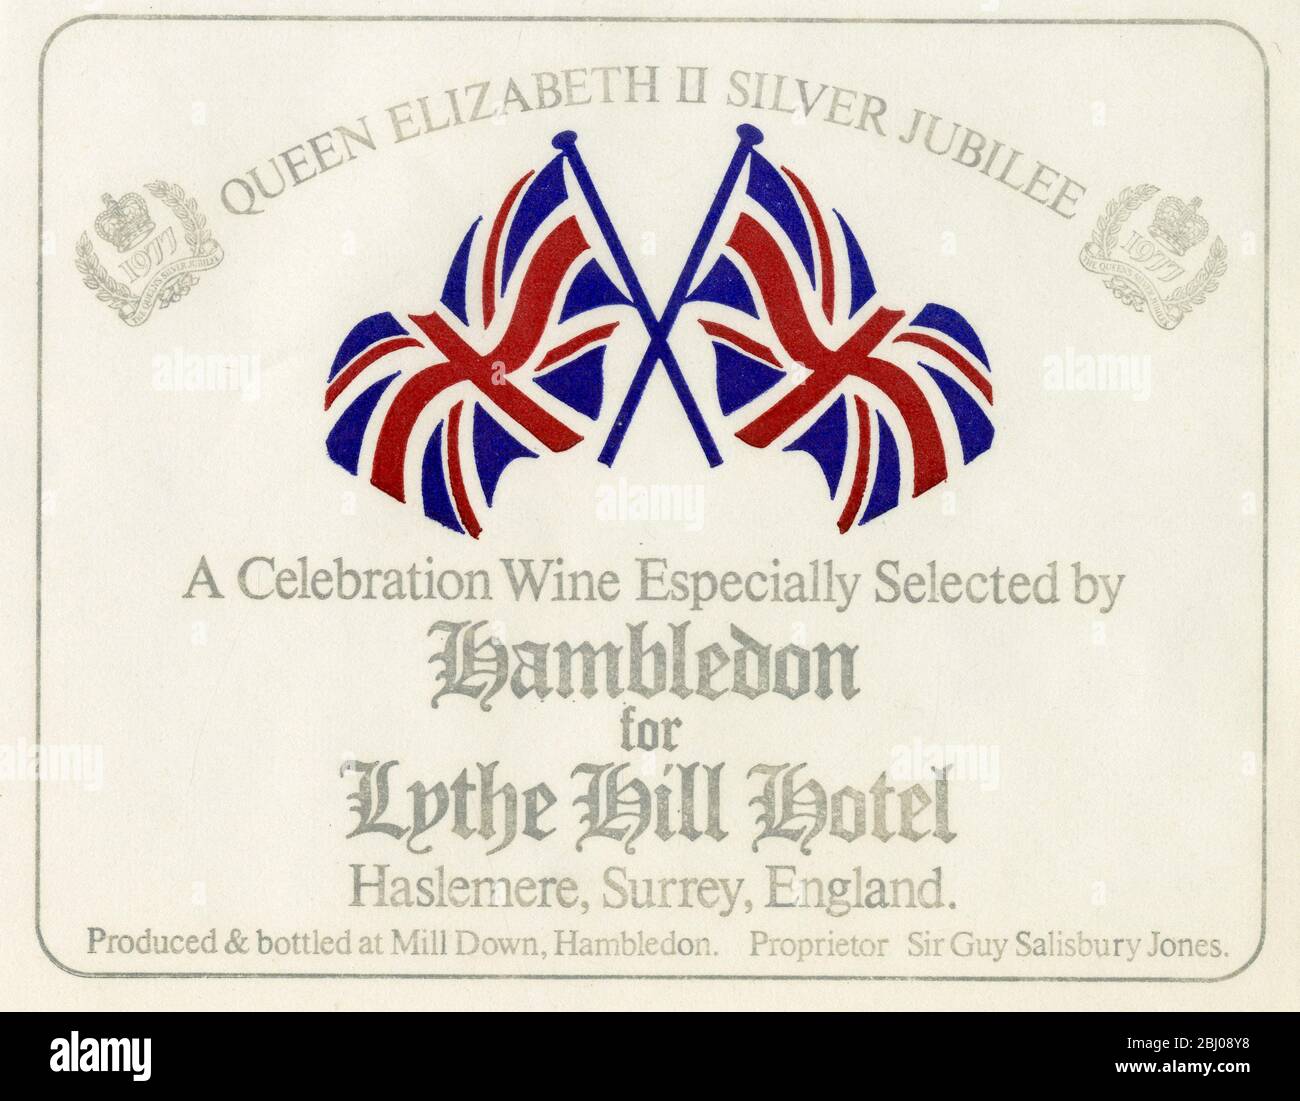 Etichetta vino - vino Hambledon. - un vino da festa scelto appositamente da Hambledon per il Lythe Hill Hotel per la Queen Elizabeth II Silver Jubilee. Prodotto e imbottigliato da Sir Guy e Lady Salisbury - Jones in un vigneto di Hambledon, Hampshire. - 1977 Foto Stock